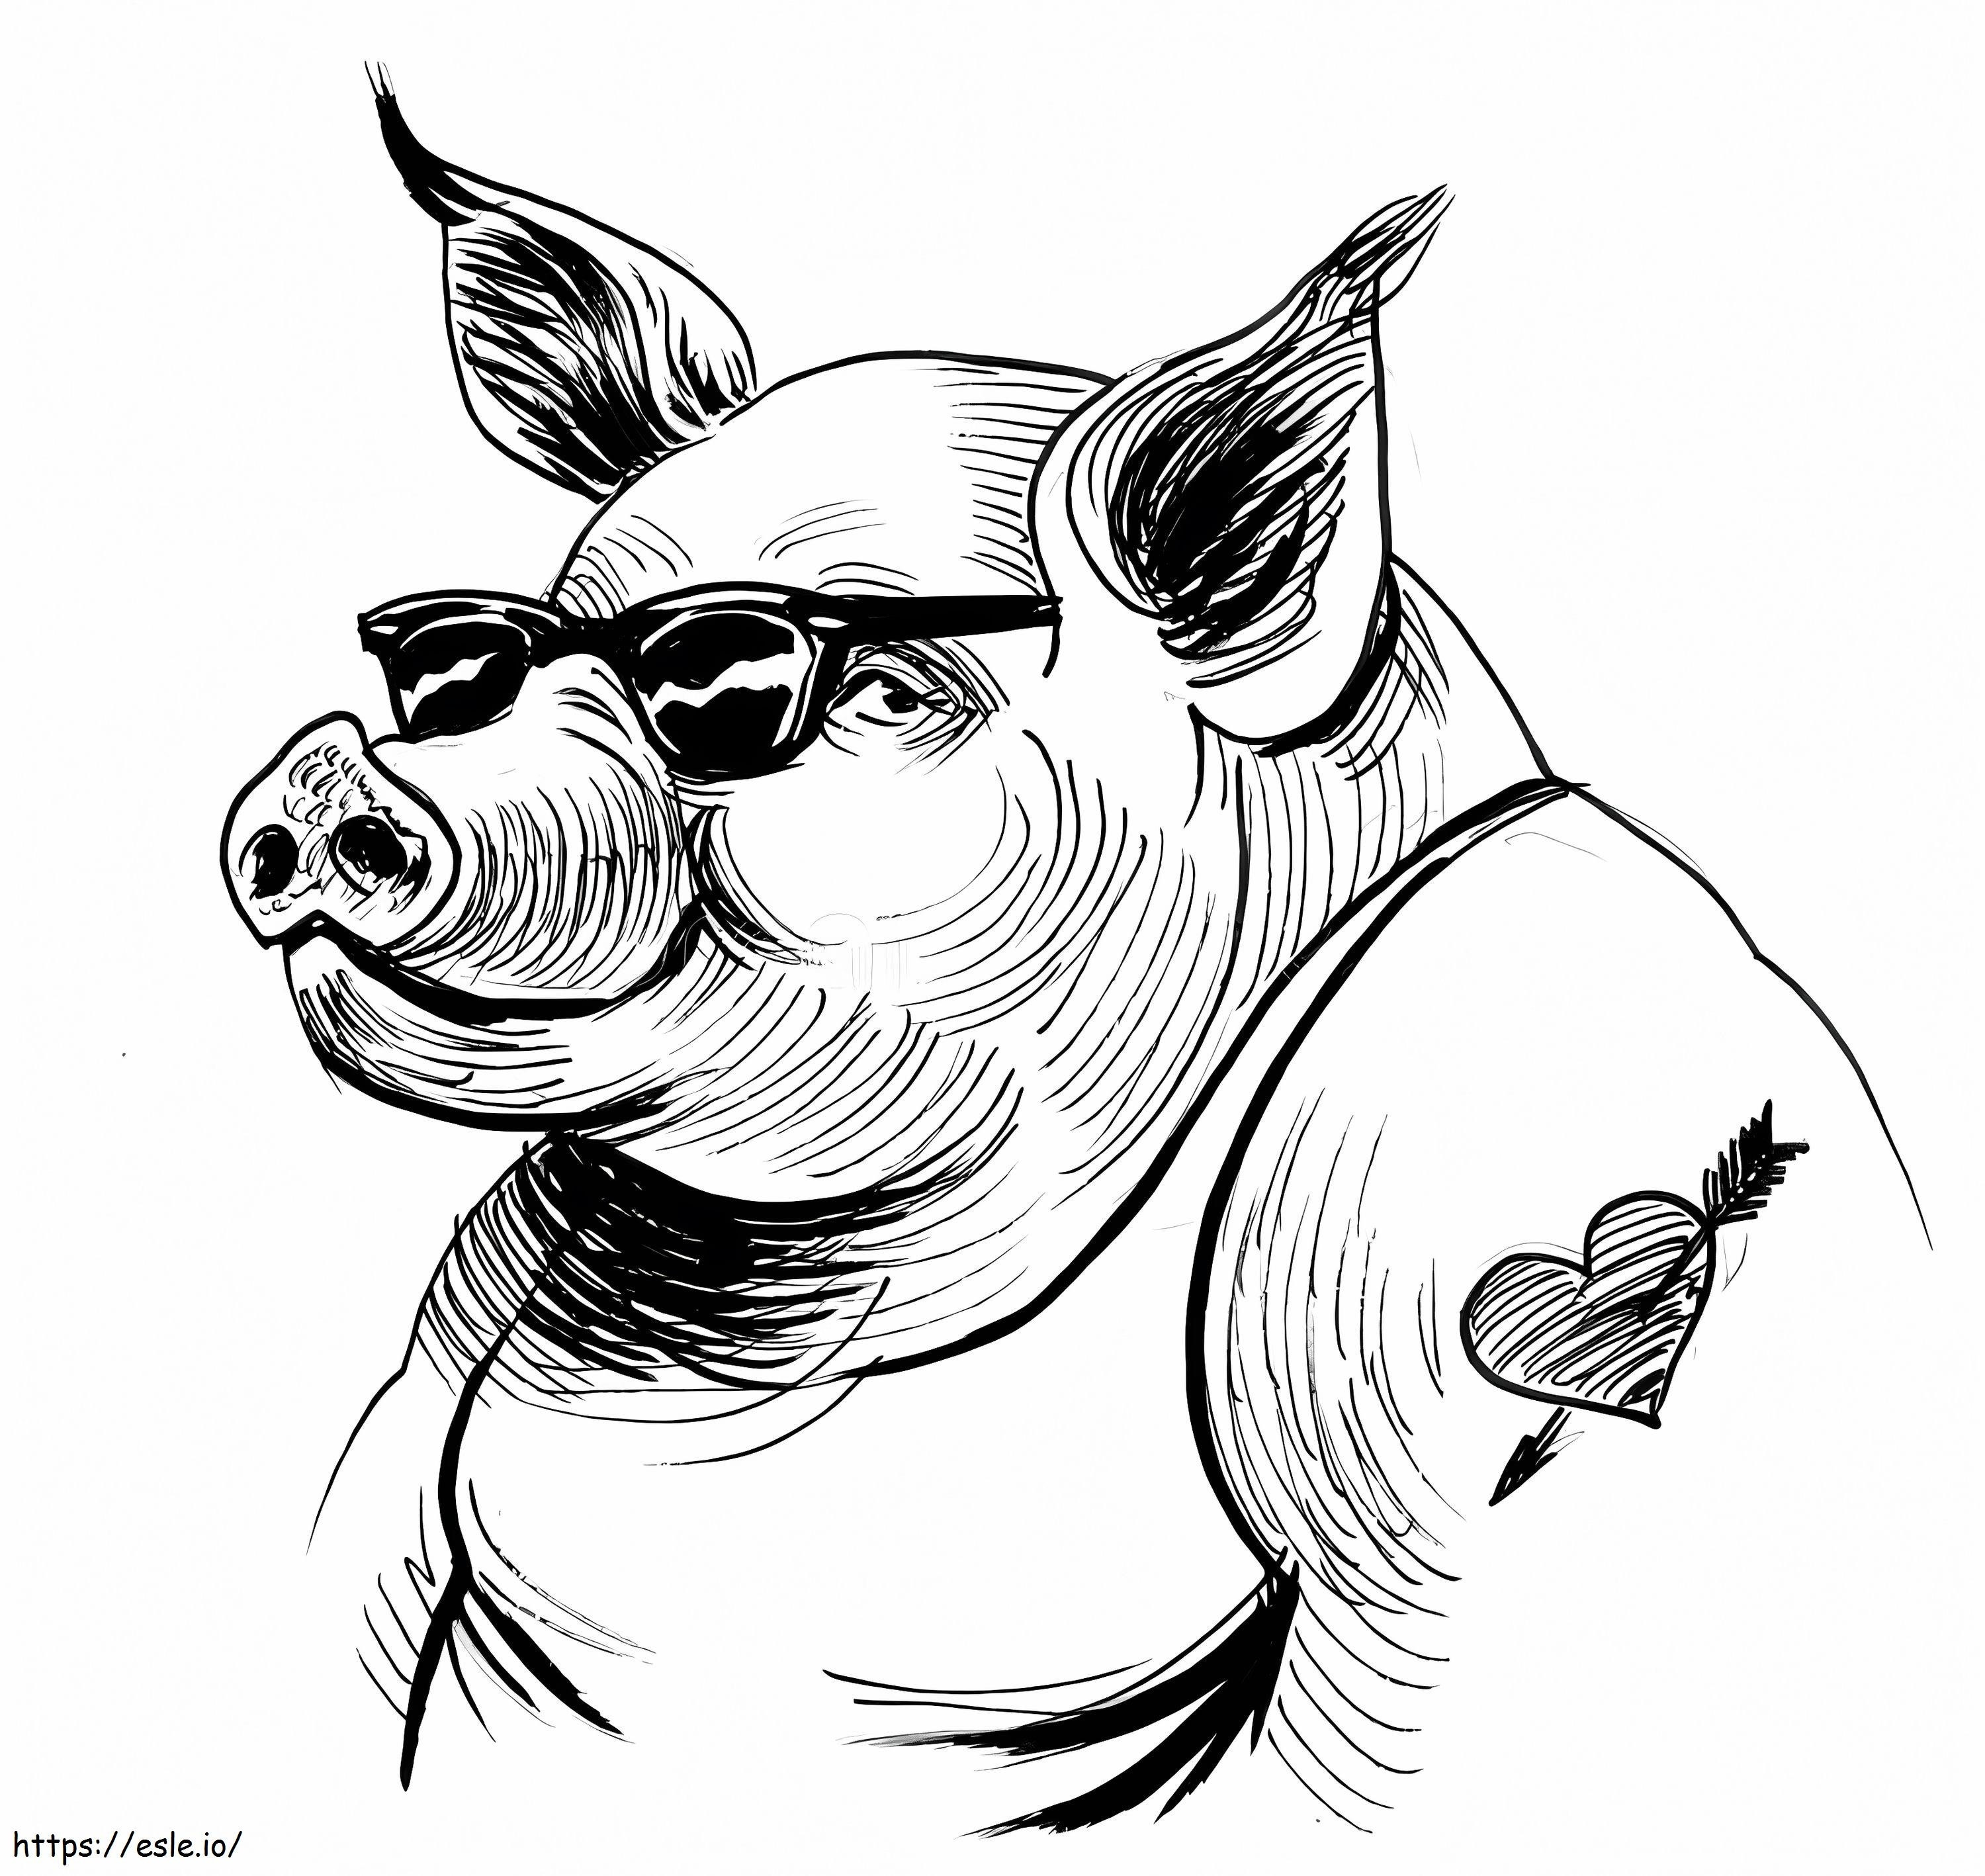 Fajny rysunek wytatuowanej świni kolorowanka